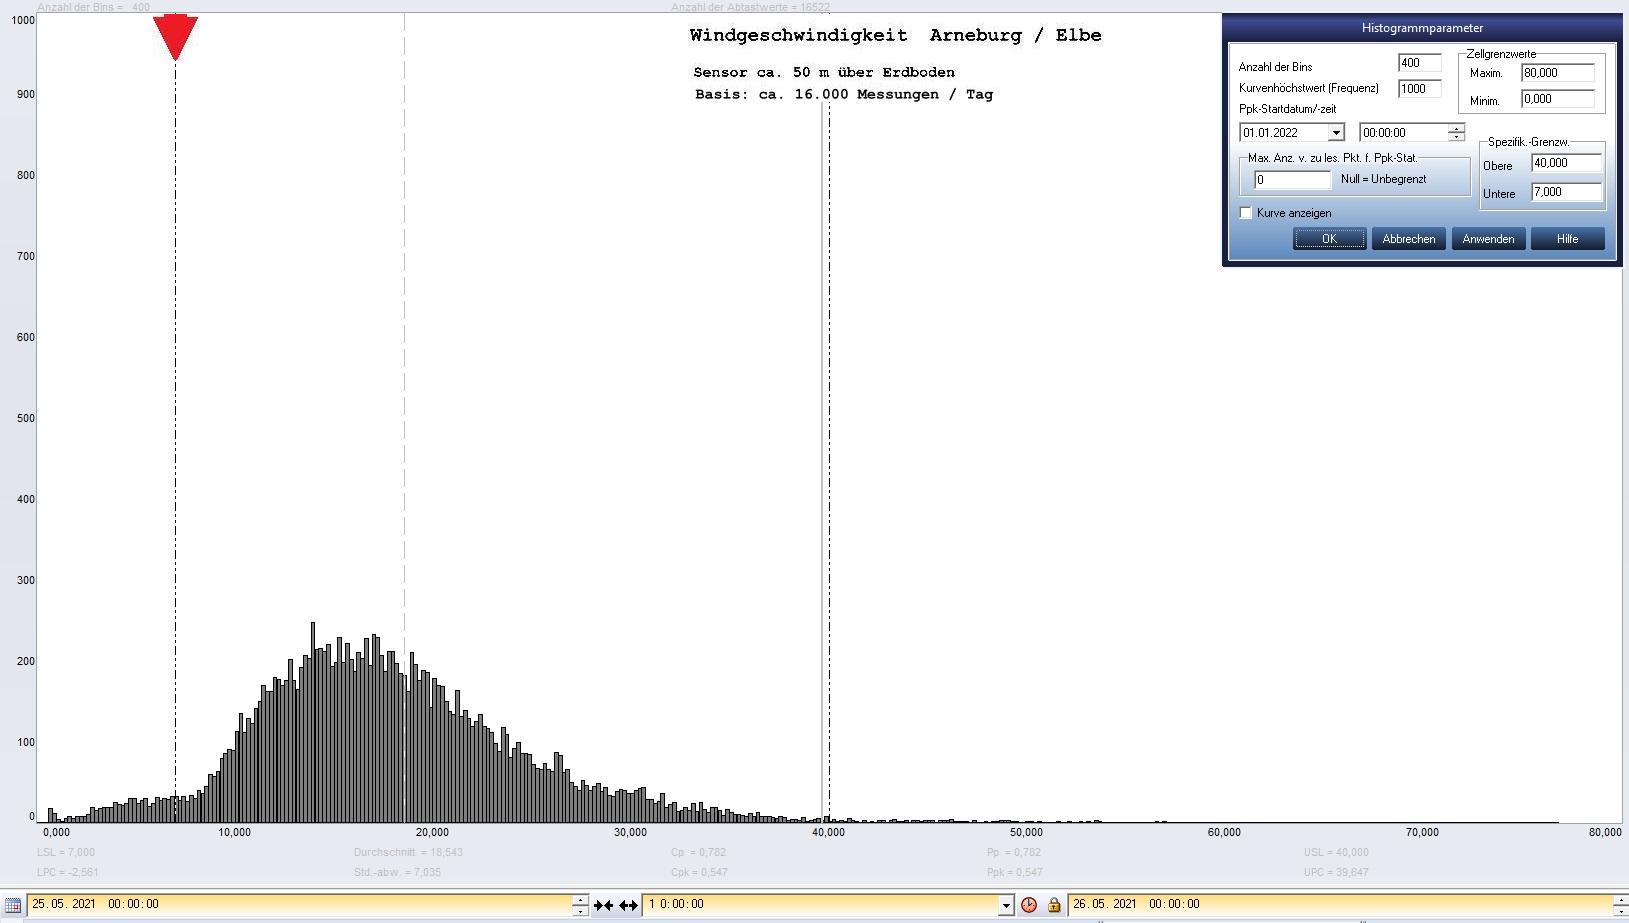 Arneburg Tages-Histogramm Winddaten, 25.05.2021
  Histogramm, Sensor auf Gebude, ca. 50 m ber Erdboden, Basis: 5s-Aufzeichnung